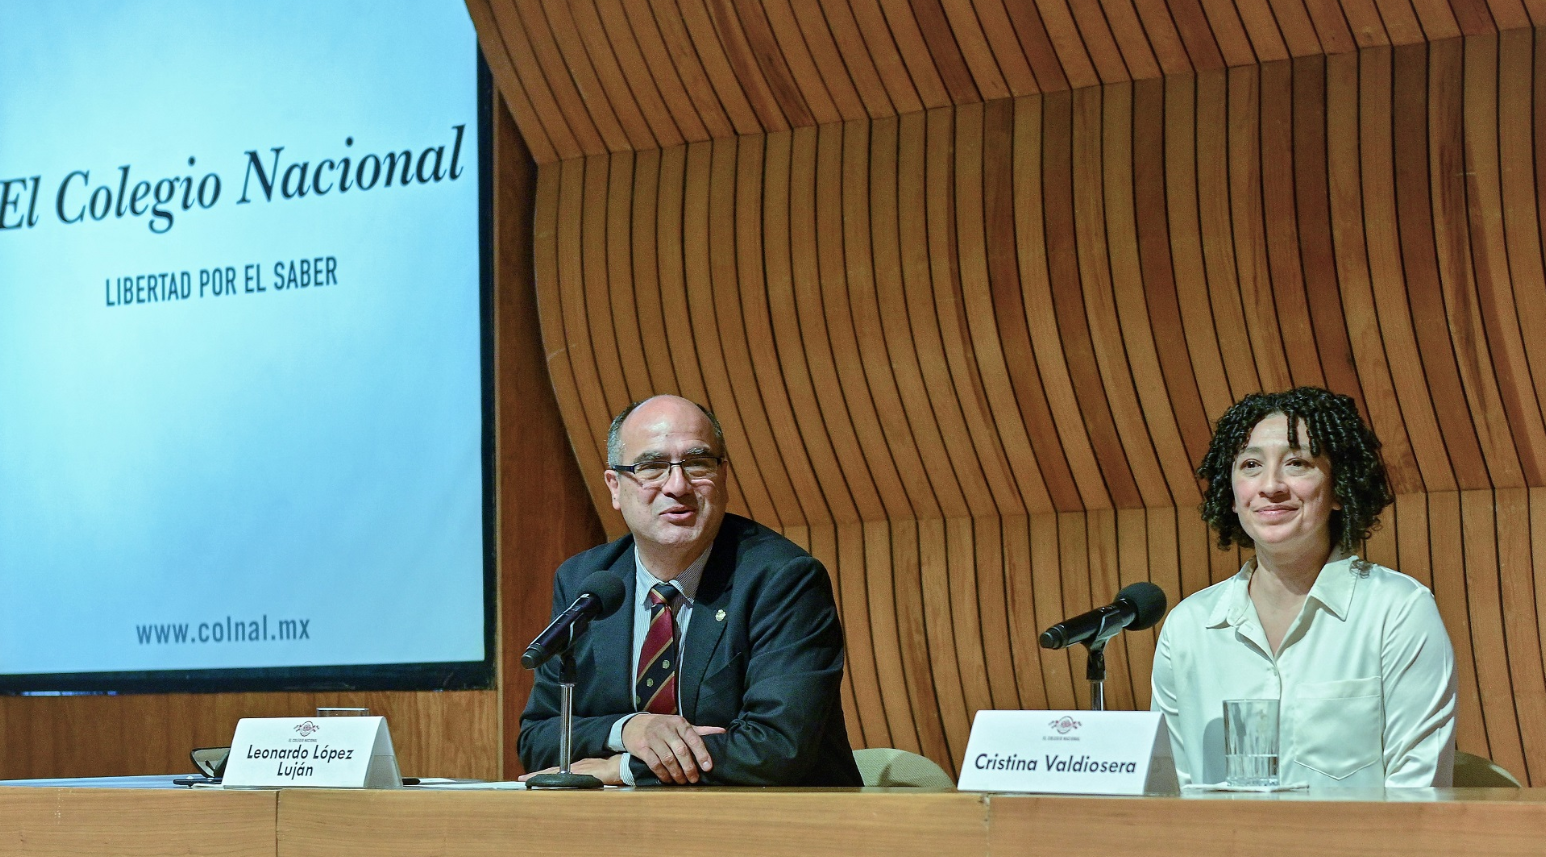 Leopoldo López y Cristina Valdiosera en la presentación del proyecto